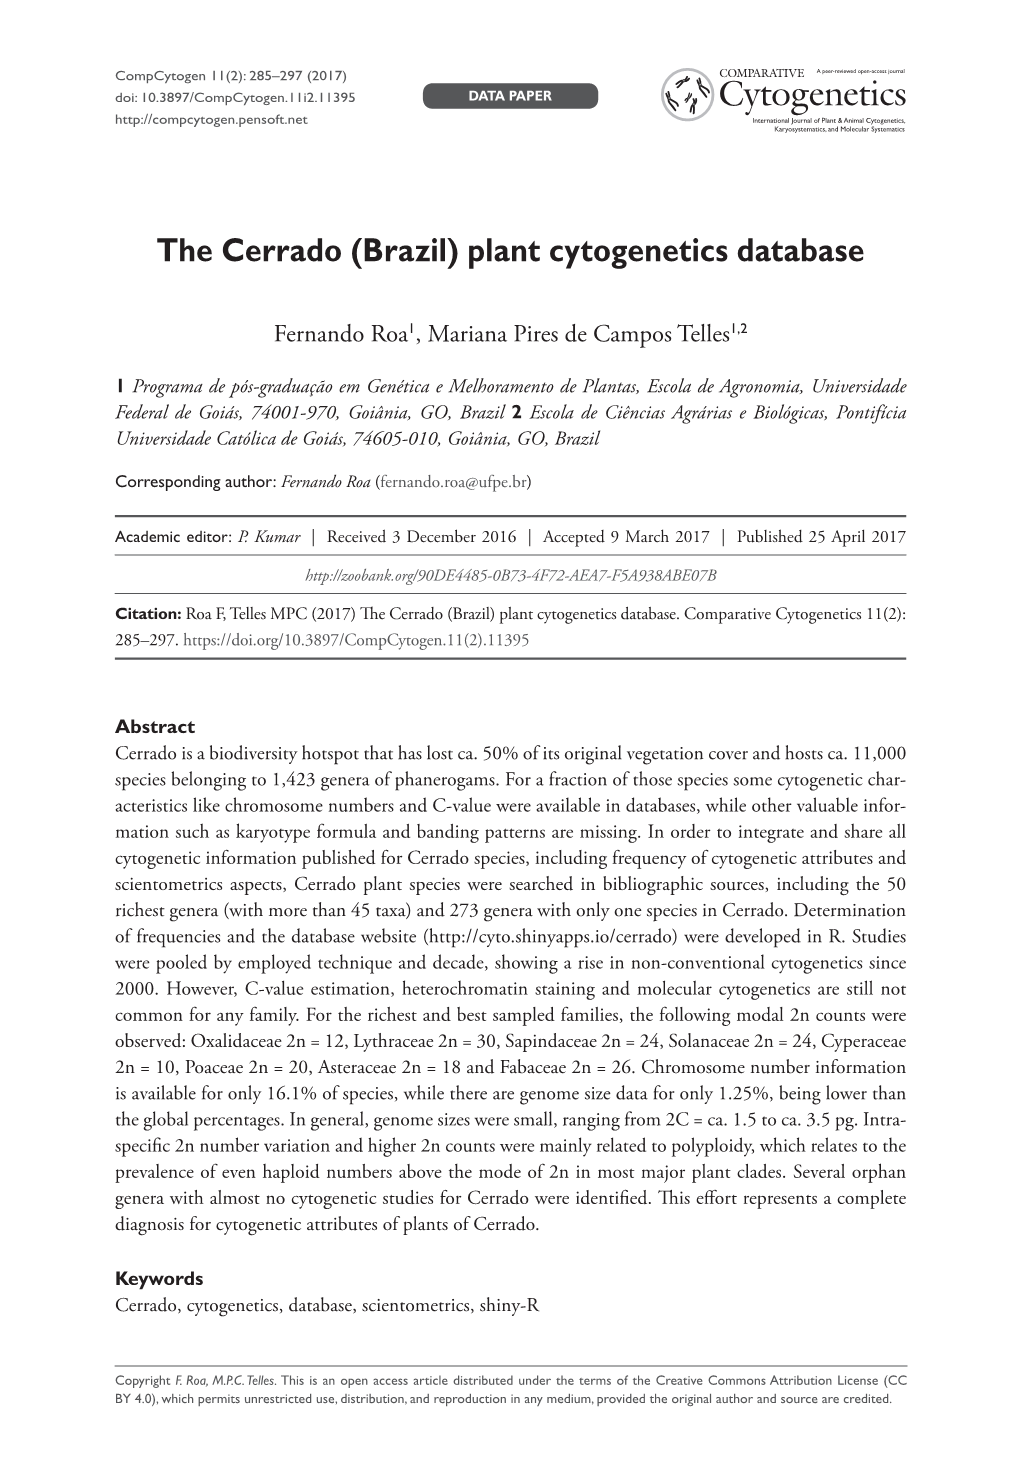 Plant Cytogenetics Database